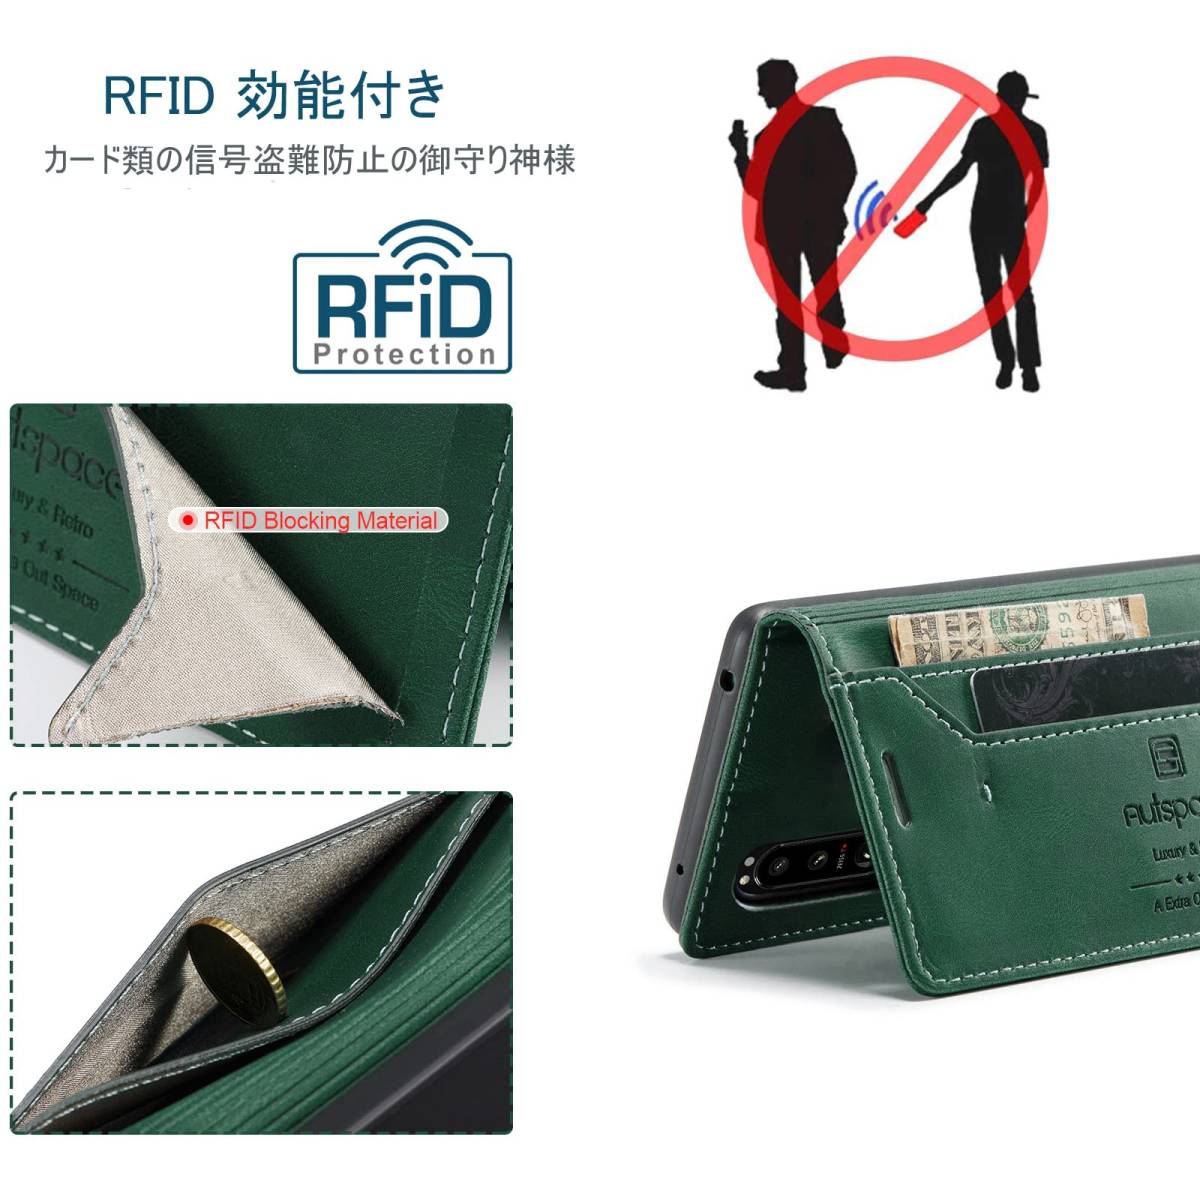 【在庫処分】ストラップホール付き 薄型 スタンド機能 マグネット式 スキミング防止 磁気防止 (Xperia RFID sog07